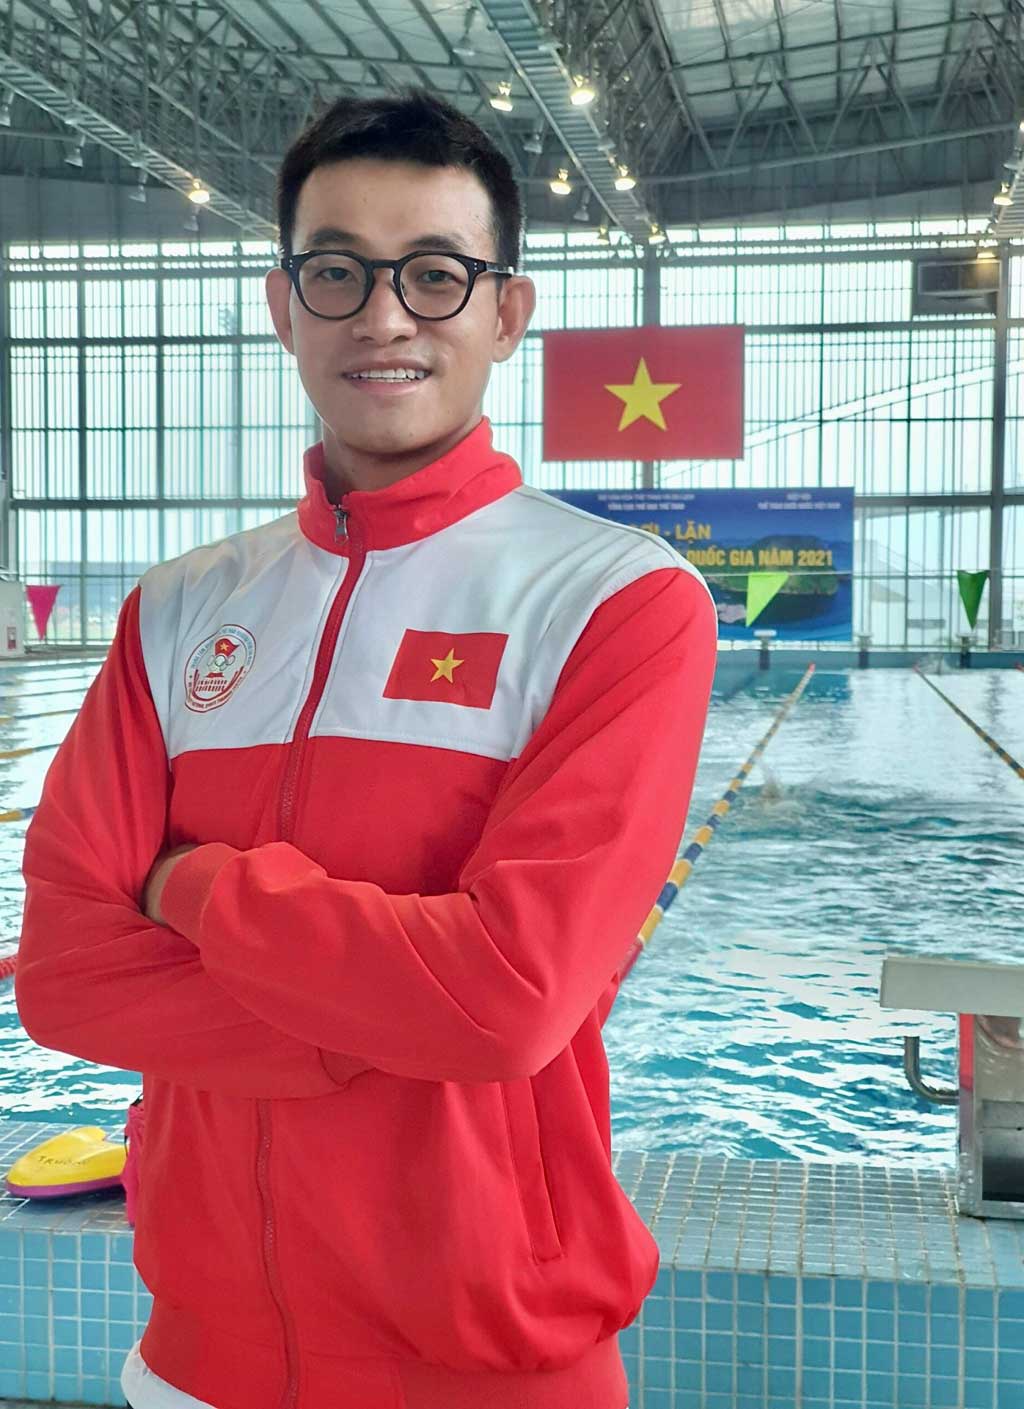 (hôm nay) Trưởng phòng cấp cao của Big4 Việt Nam trở thành VĐV SEA Games 31: 18 tuổi bỏ ngang bơi lội để sang Úc du học, 30 tuổi bén duyên lại với thi đấu thể thao chuyên nghiệp - Ảnh 3.